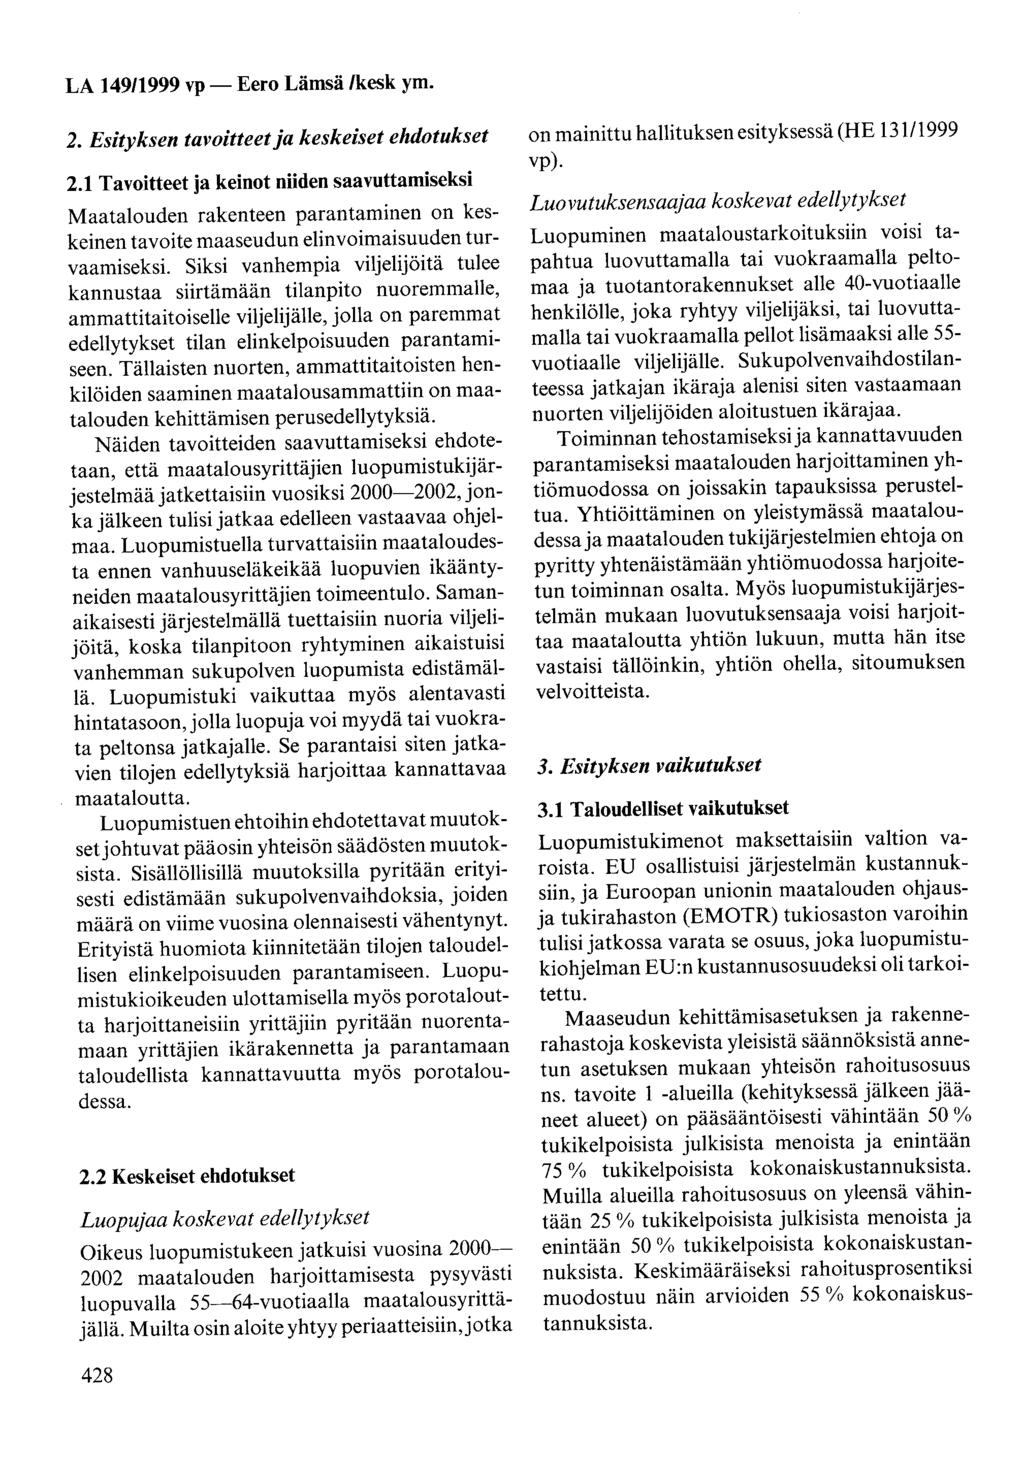 LA 14911999 vp- Eero Lämsä /kesk ym. 2. Esityksen tavoitteet ja keskeiset ehdotukset 2.